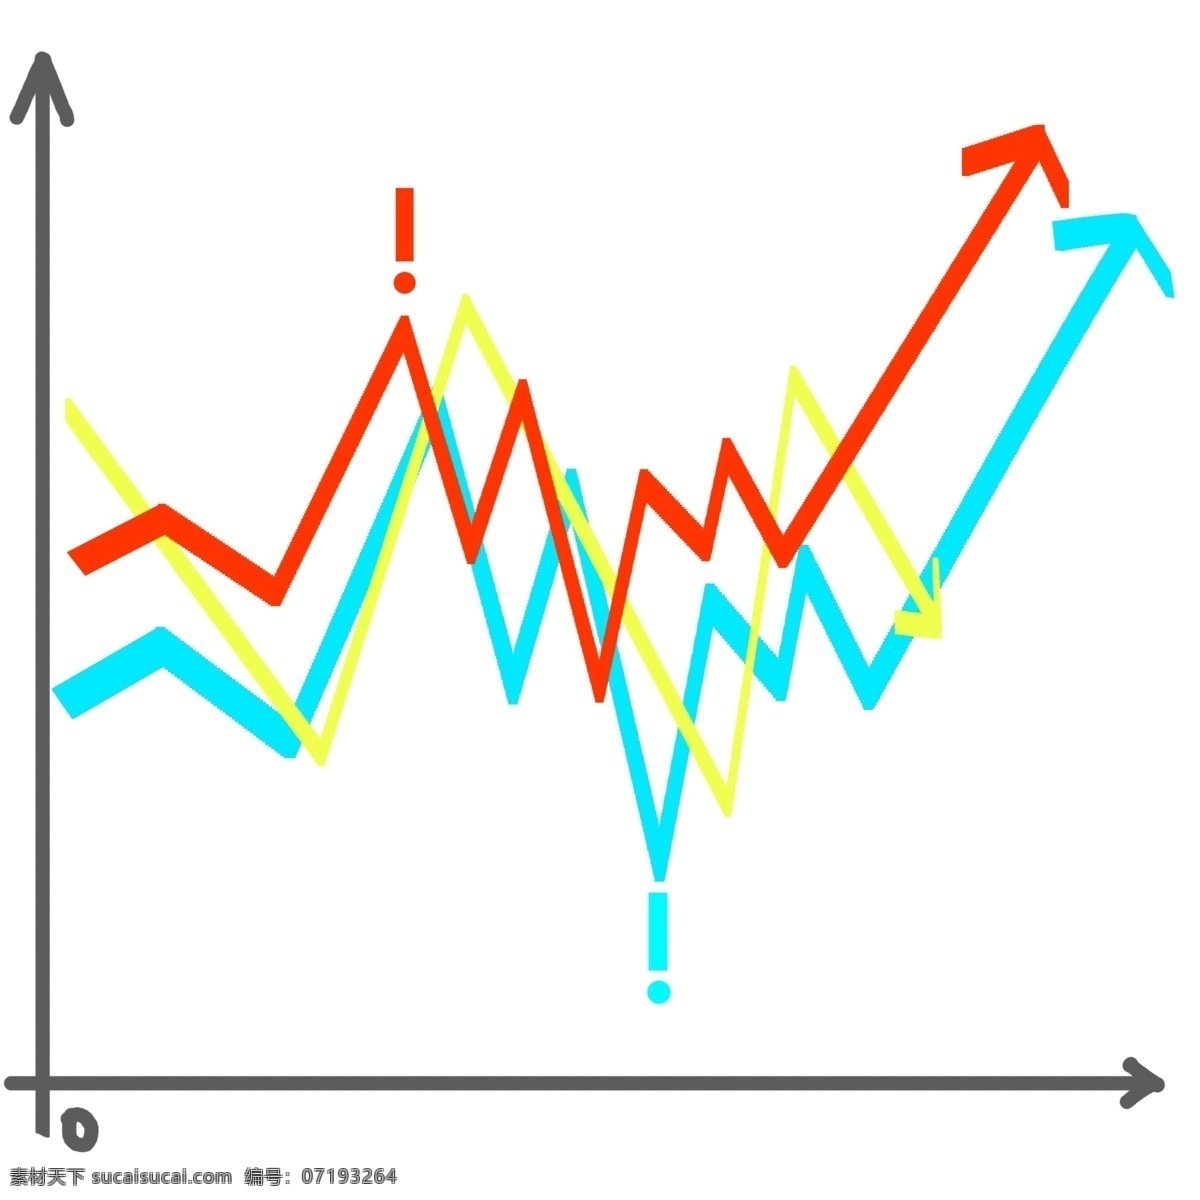 业务 增势 图 图标 销售箭头图标 创意趋势图 业务增势图 营销趋势图 数据 列表 ppt图标 绿色图标